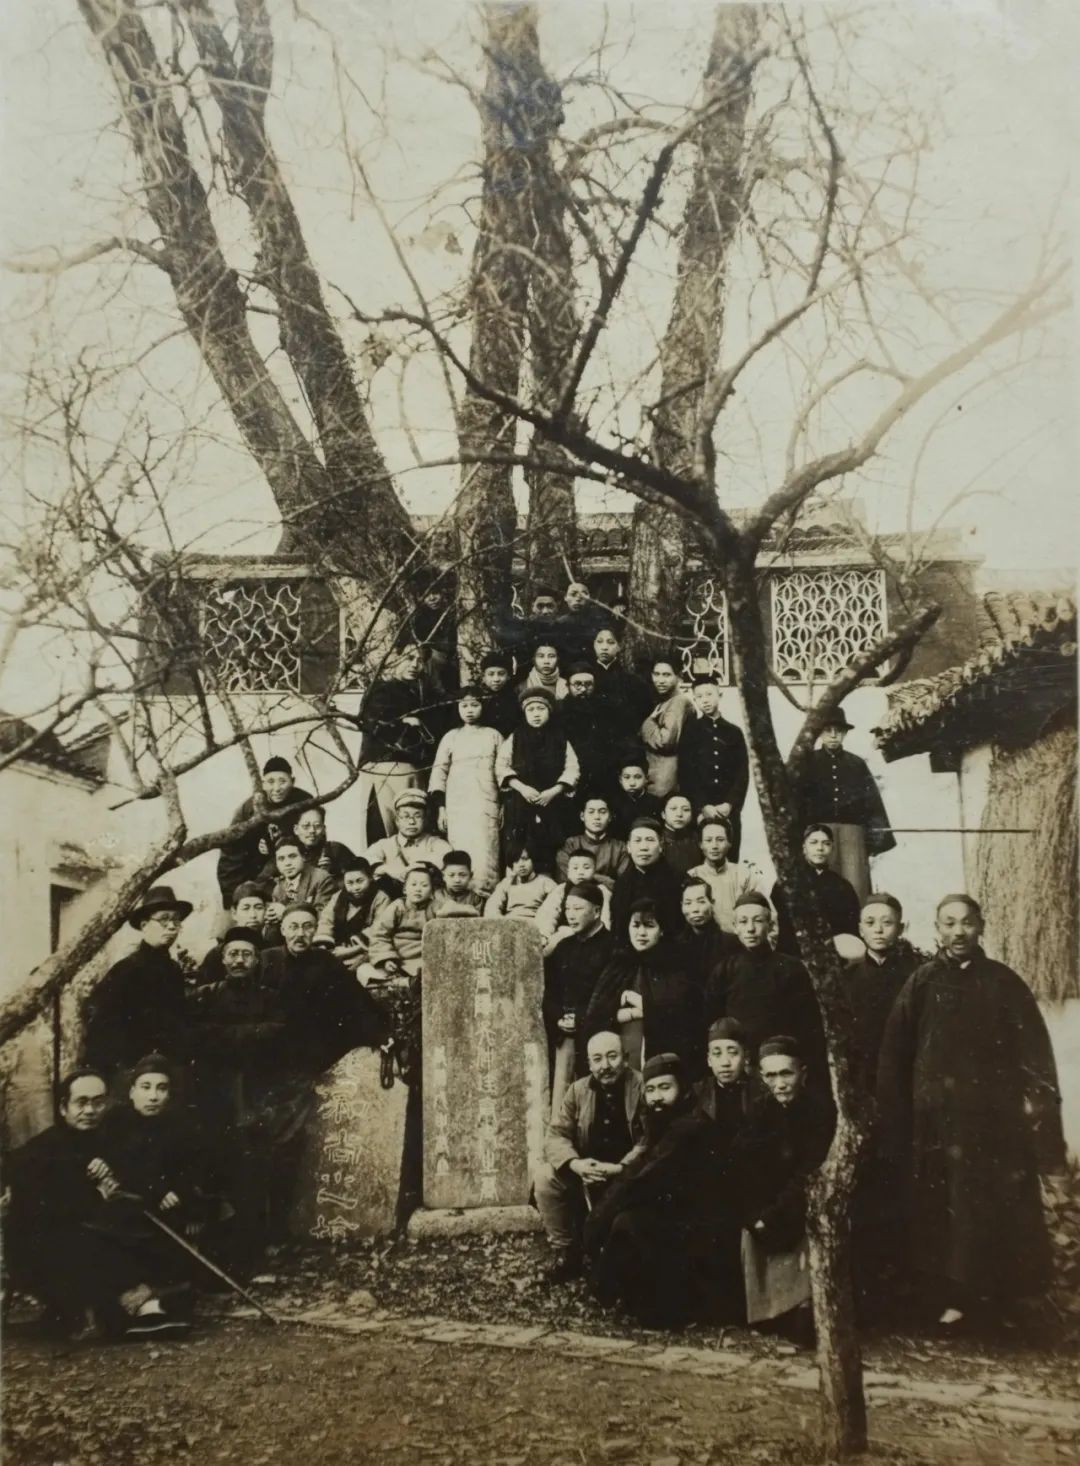 黄宾虹、张大千等在嘉善县吴镇墓前合影 1930年12月13日摄